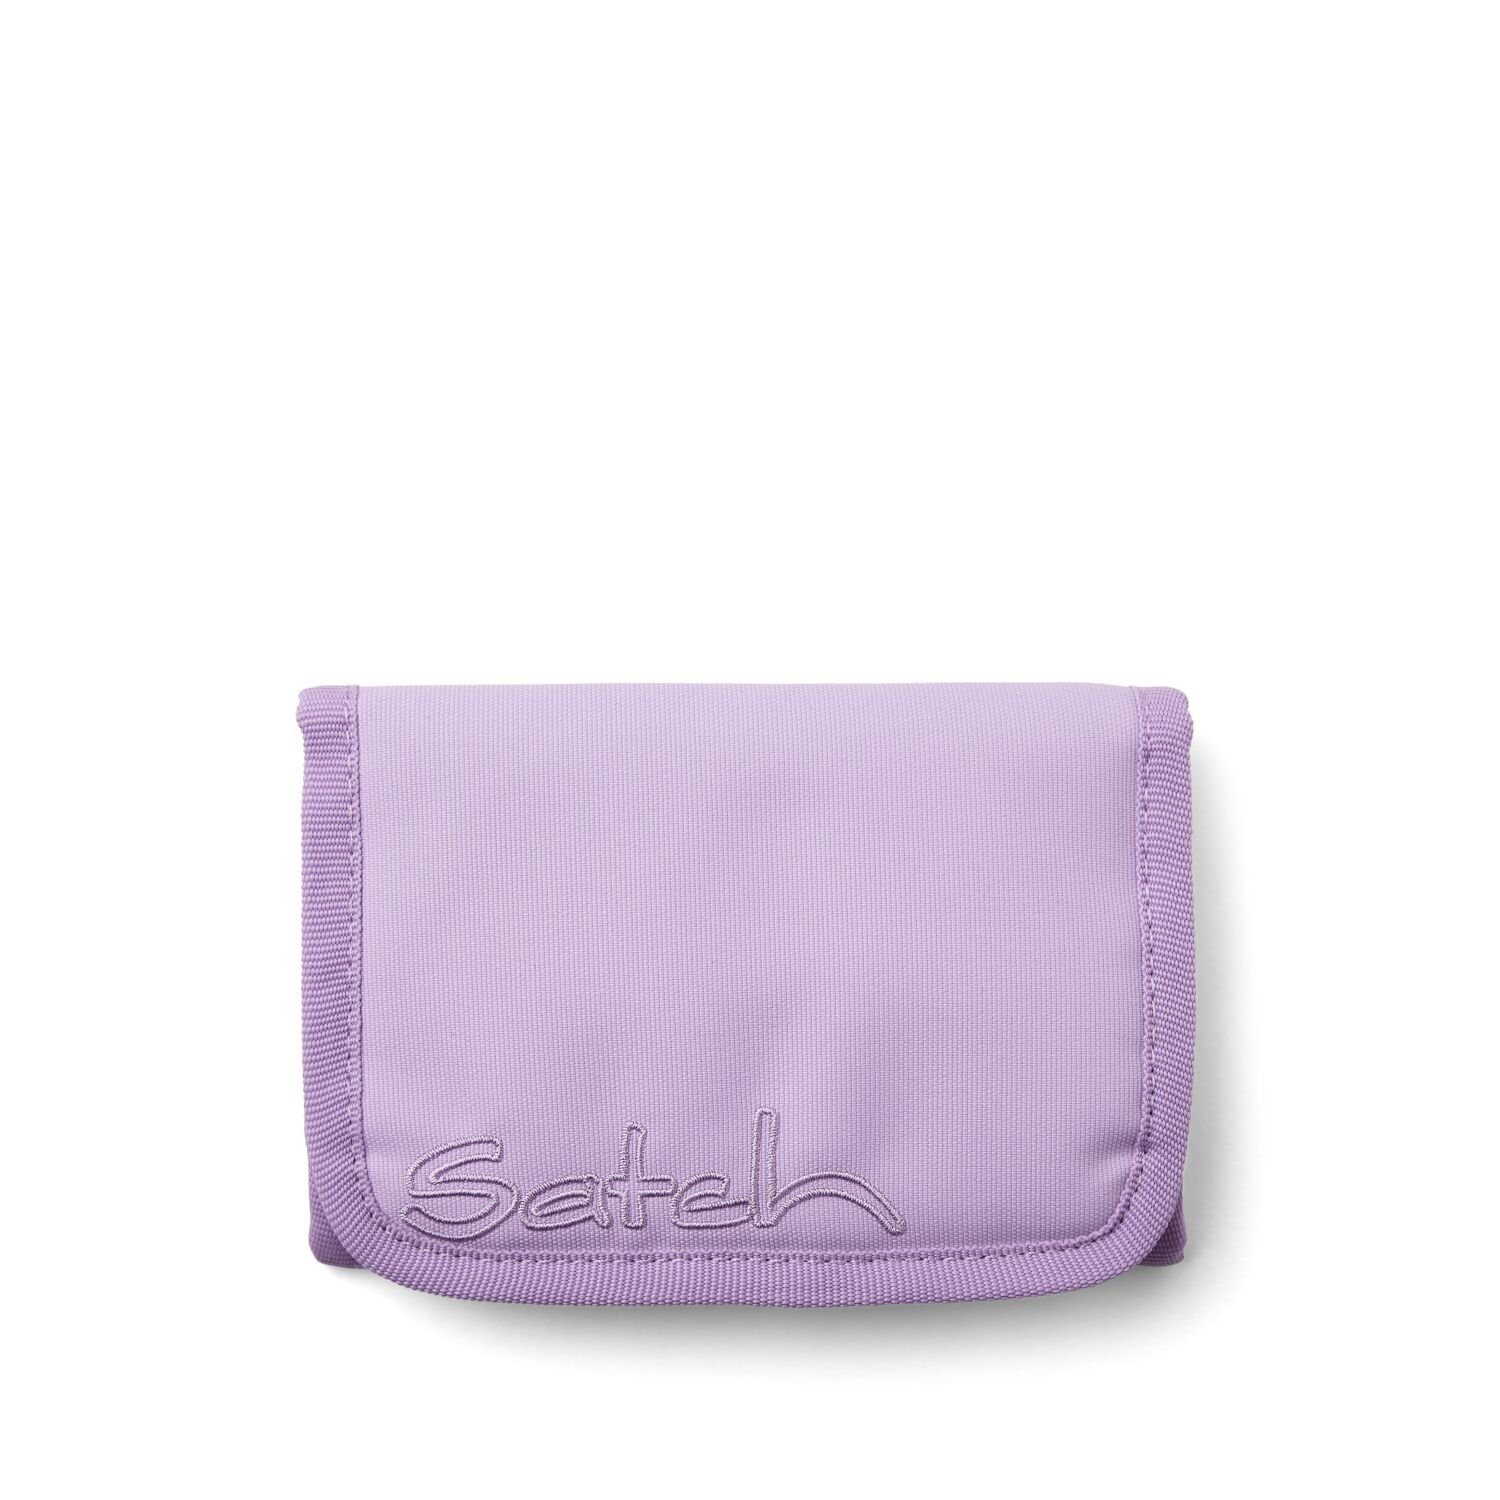 Satch Schulranzen Geldbeutel Nordic Purple (1 Stück), Geldbörse, Portemonnaie, Brieftasche | Schulranzen